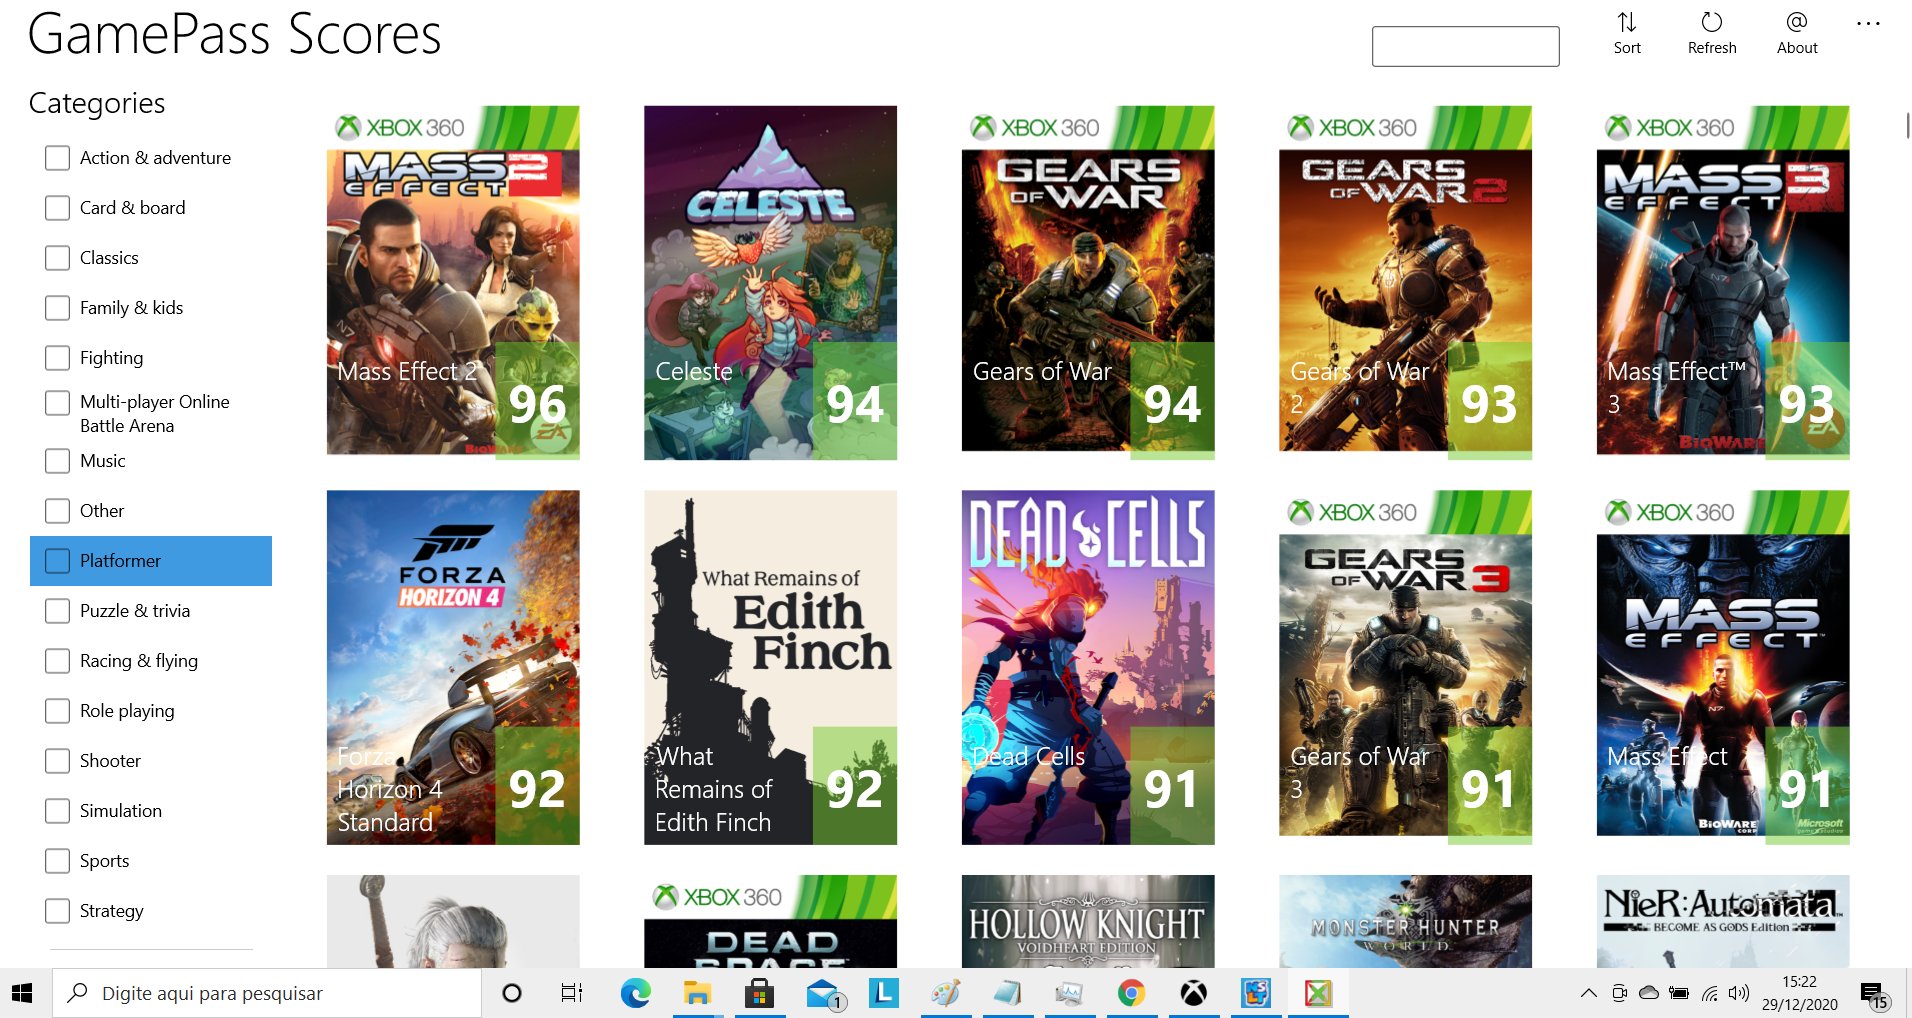 Estes são os jogos que deixaram a loja do Xbox este mês - Windows Club